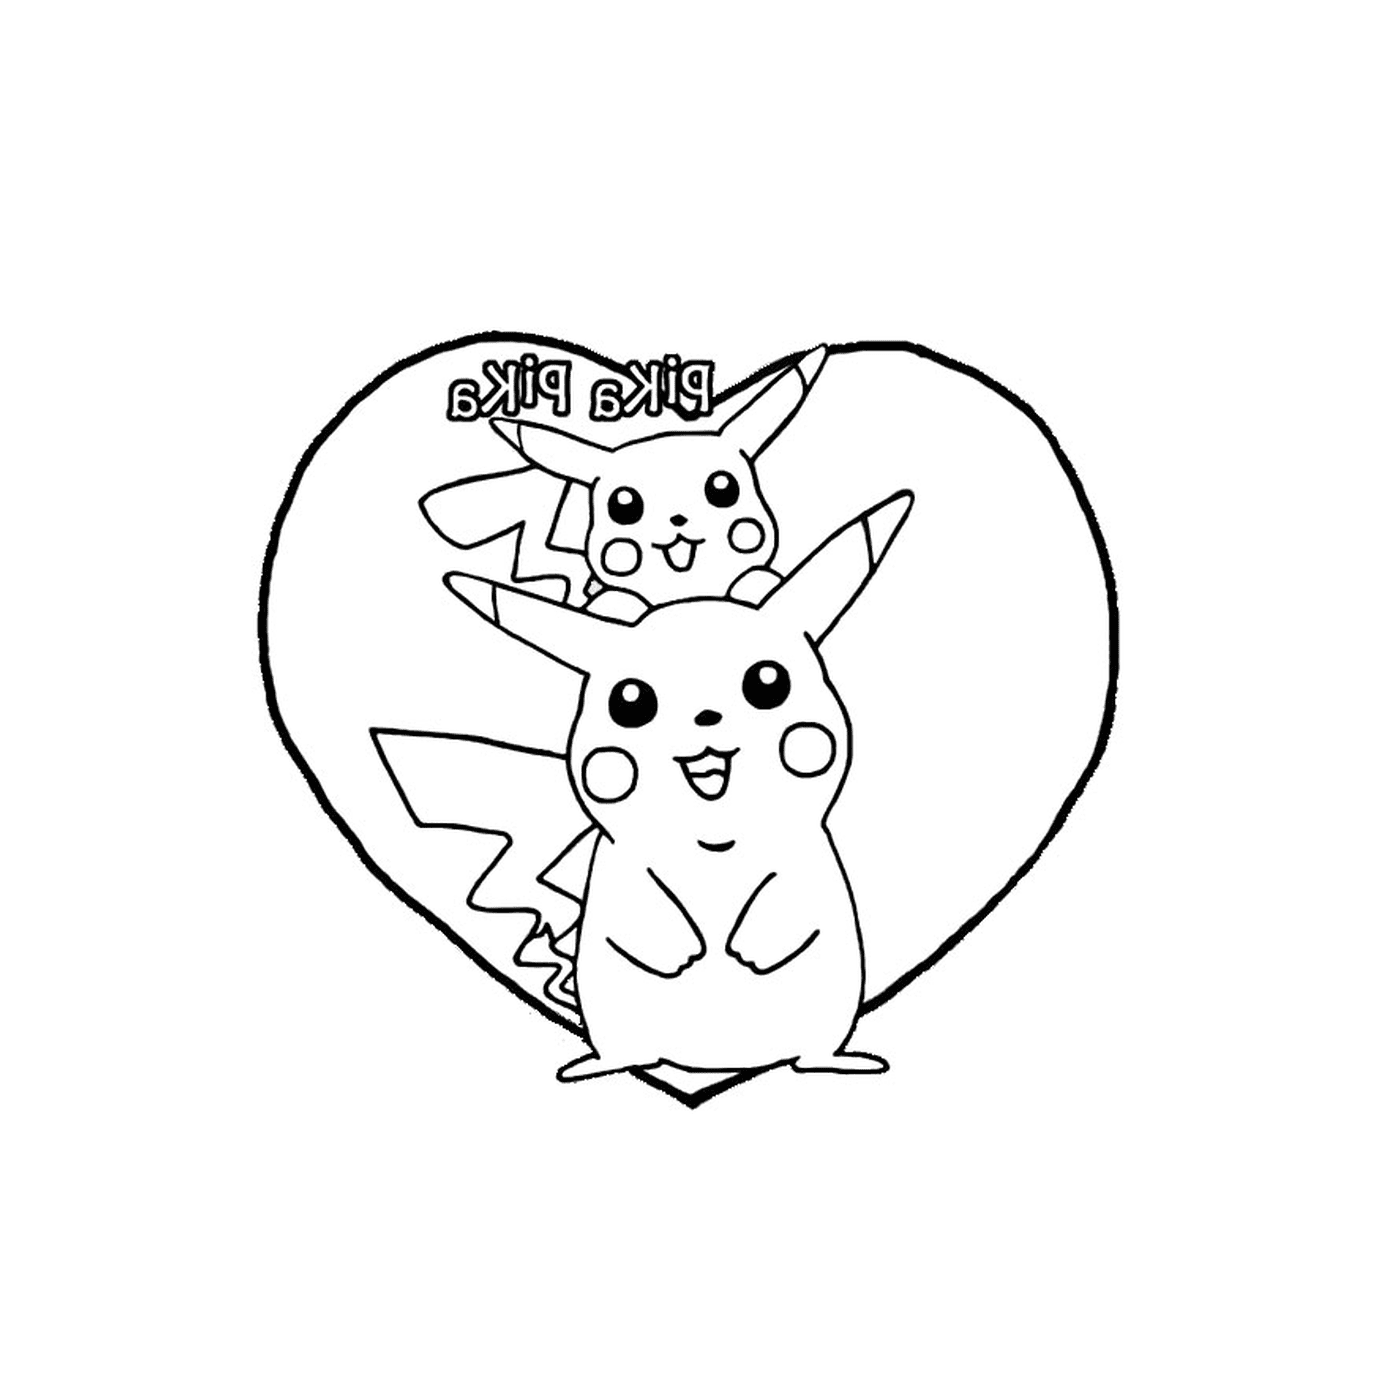  Pikachu und Liebe im Herzen 